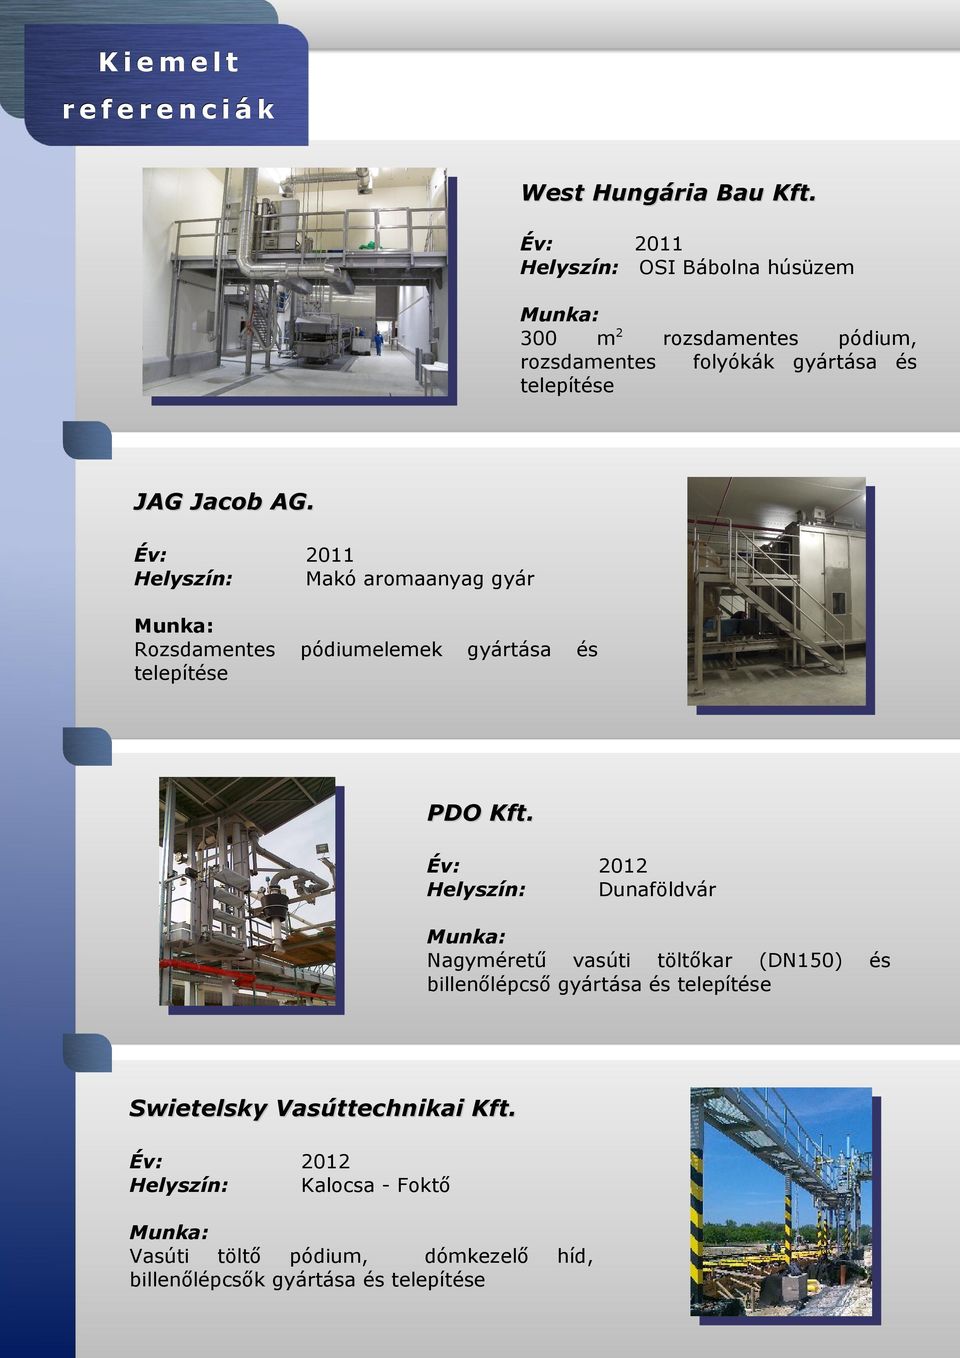 Év: Helyszín: 2011 Makó aromaanyag gyár Munka: Rozsdamentes telepítése pódiumelemek gyártása és PDO Kft.